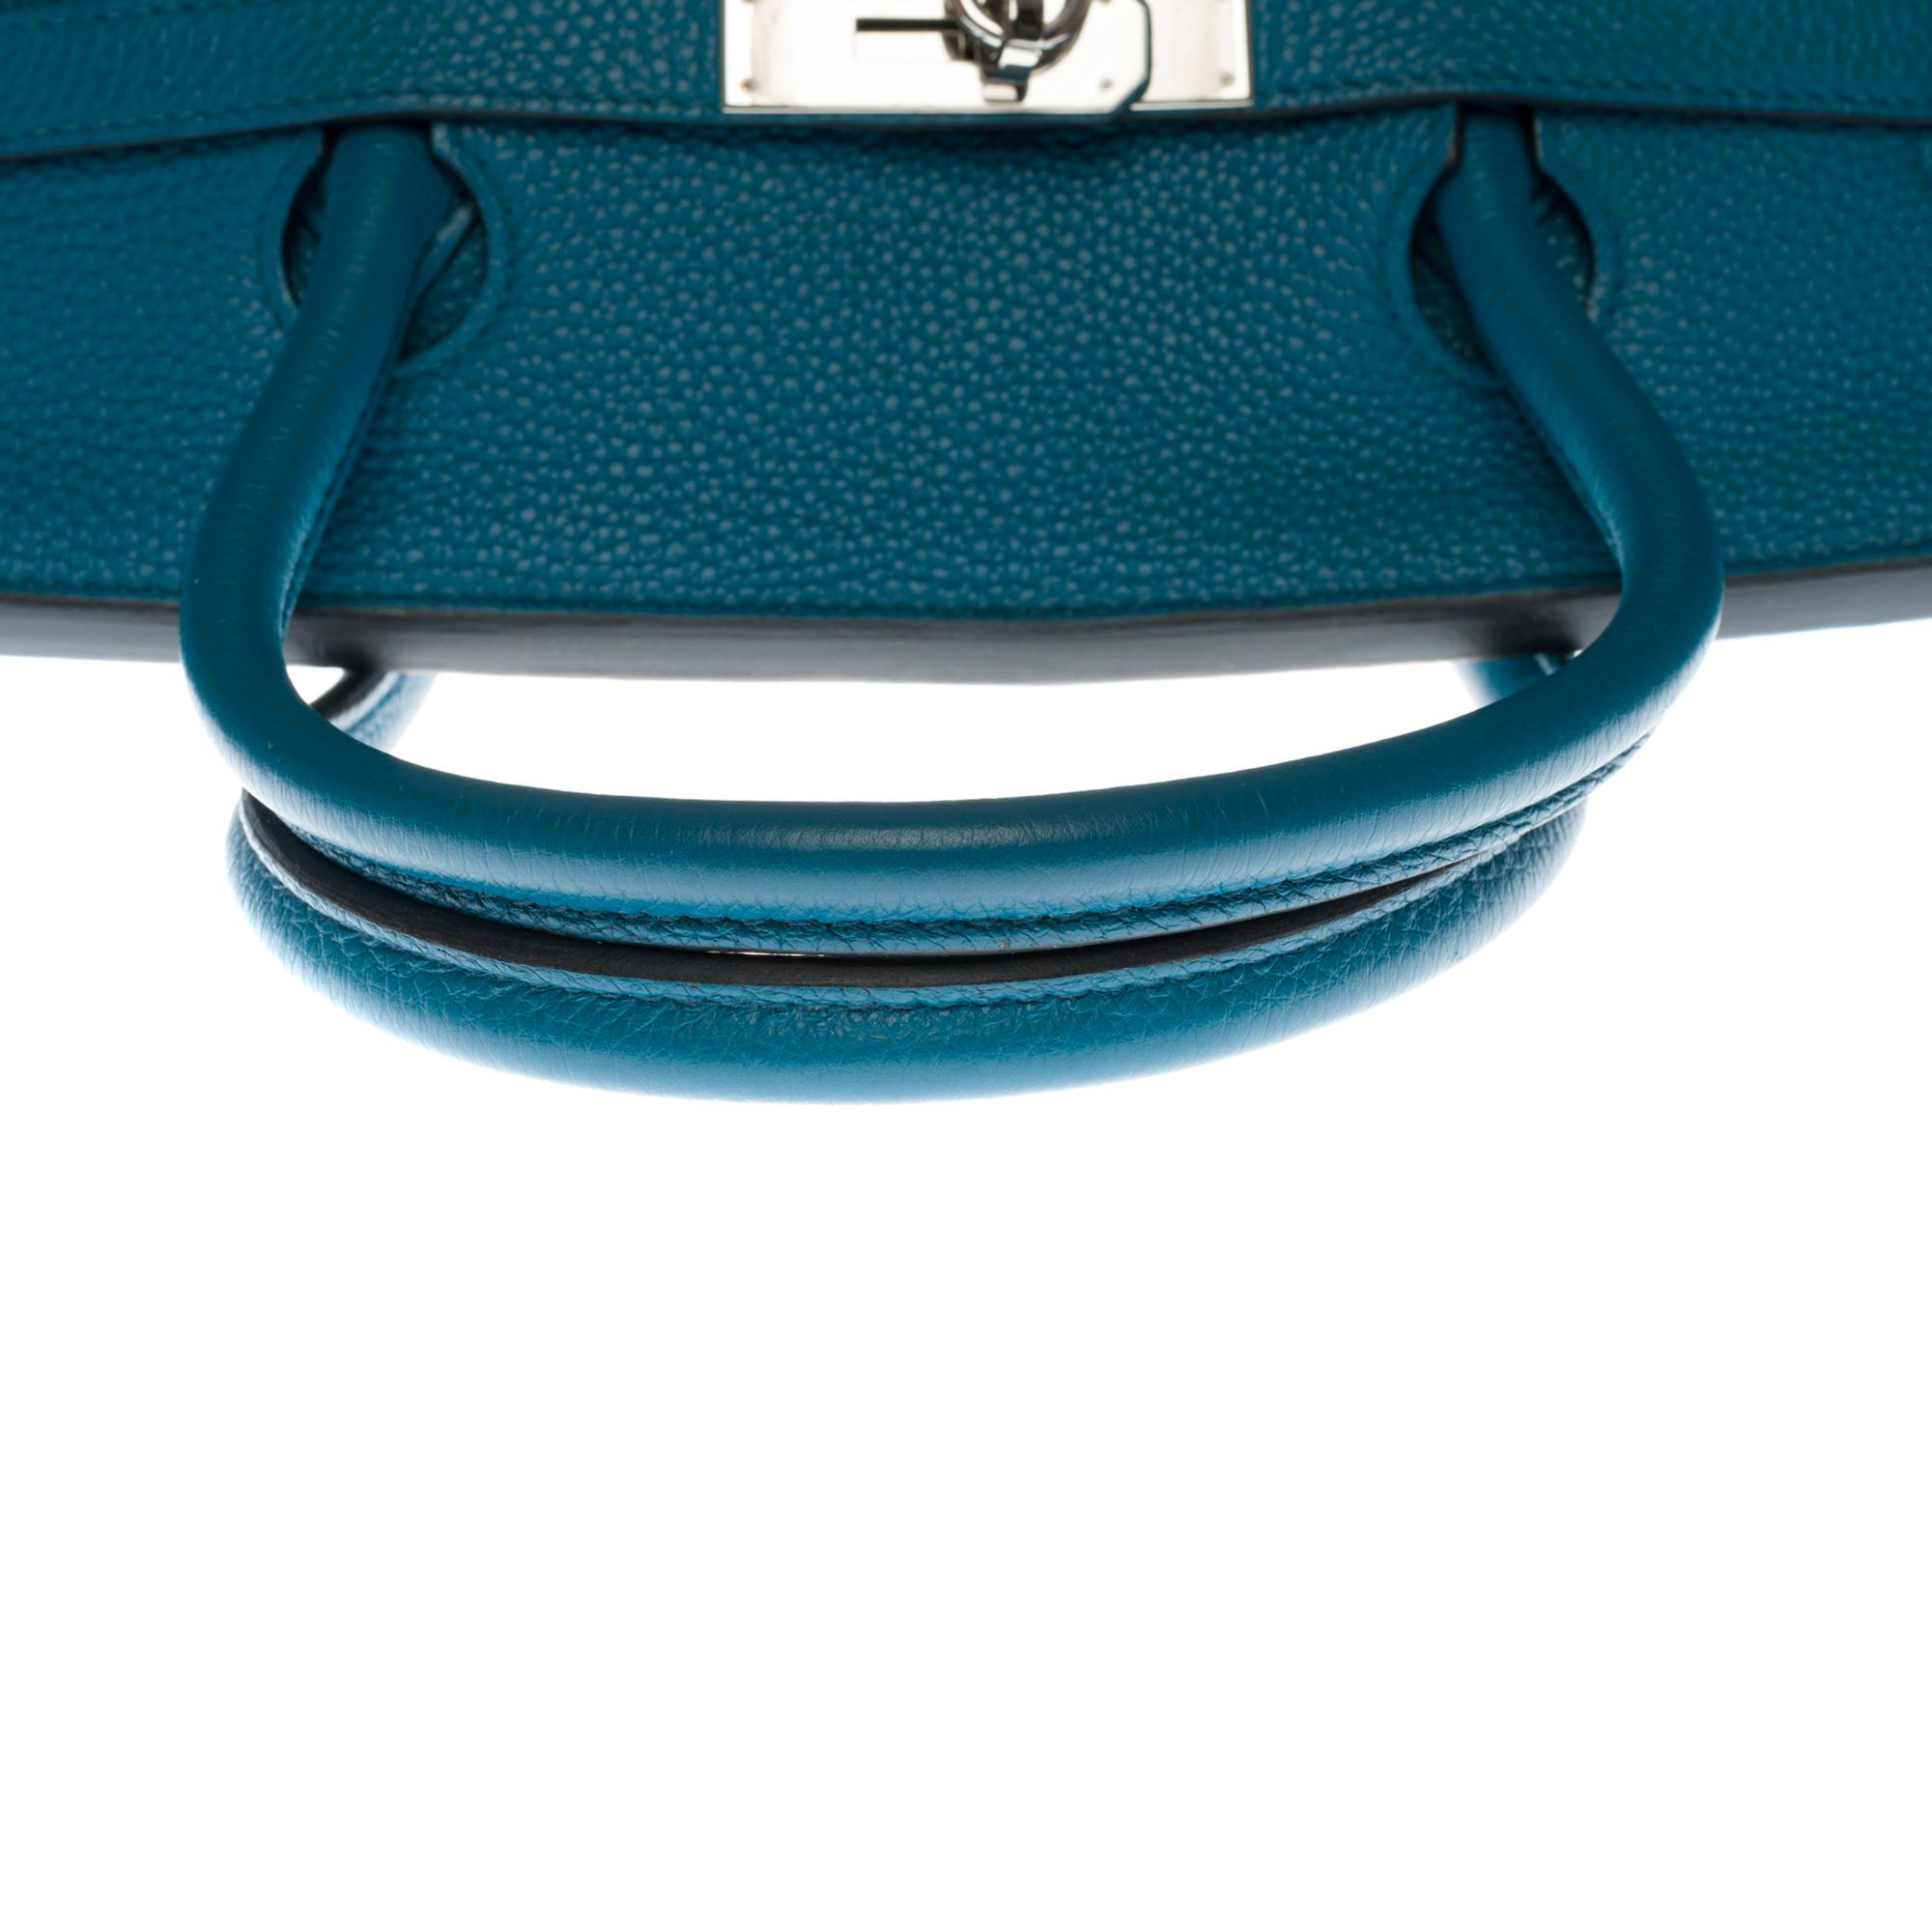 Stunning Hermes Birkin 40cm handbag in Blue Pétrole Togo leather, SHW 2